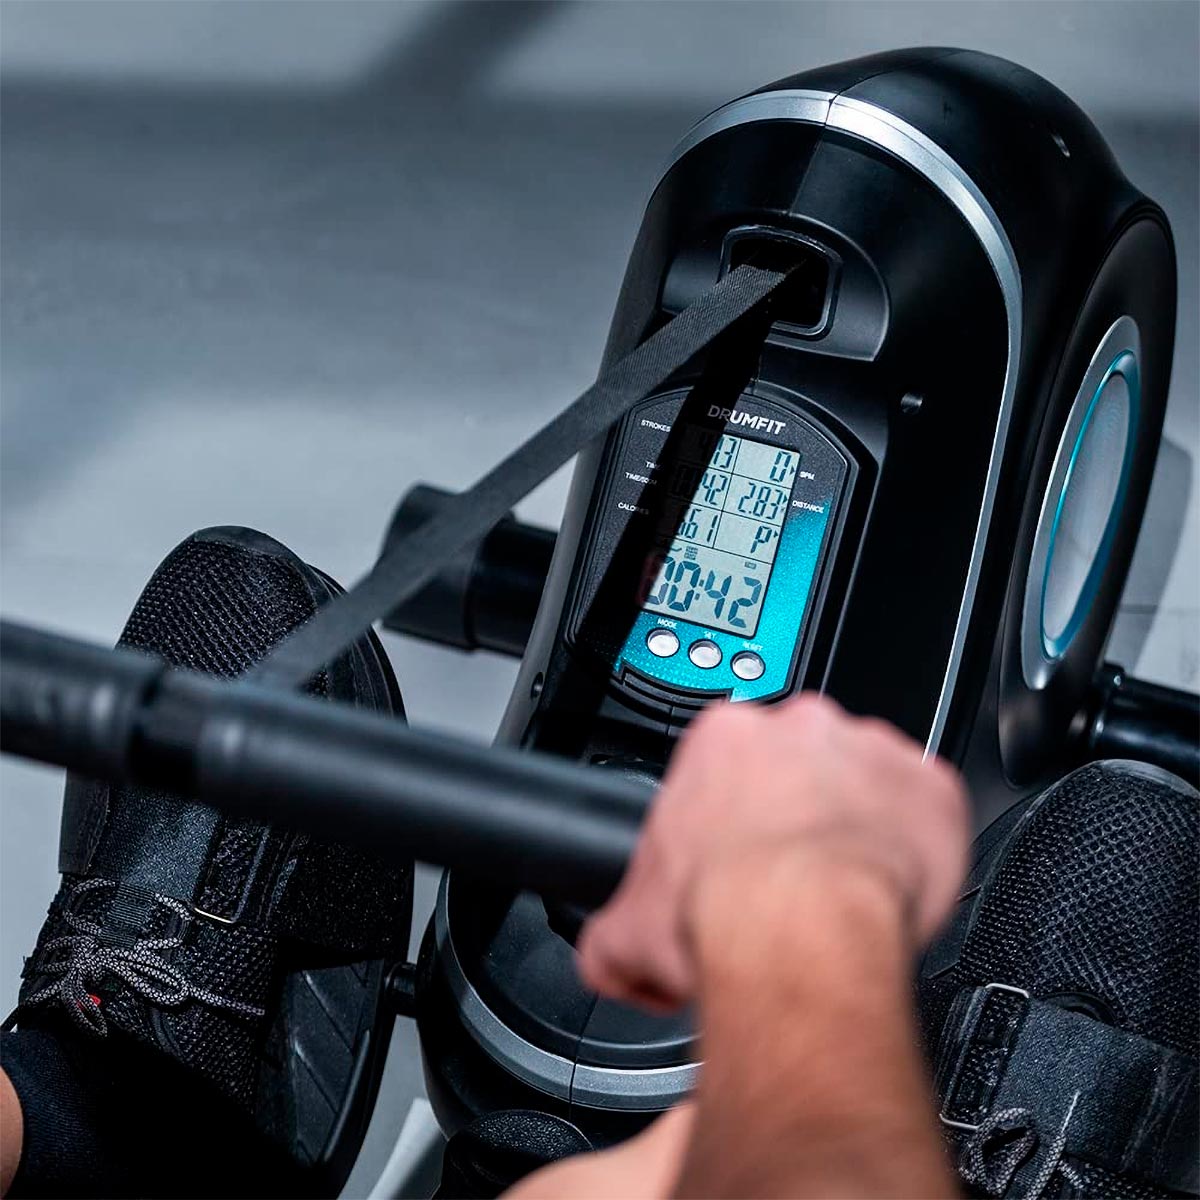 Cecotec DrumFit Rower 7000 Regatta, una económica máquina de remo ideal para entrenar todo el cuerpo en casa